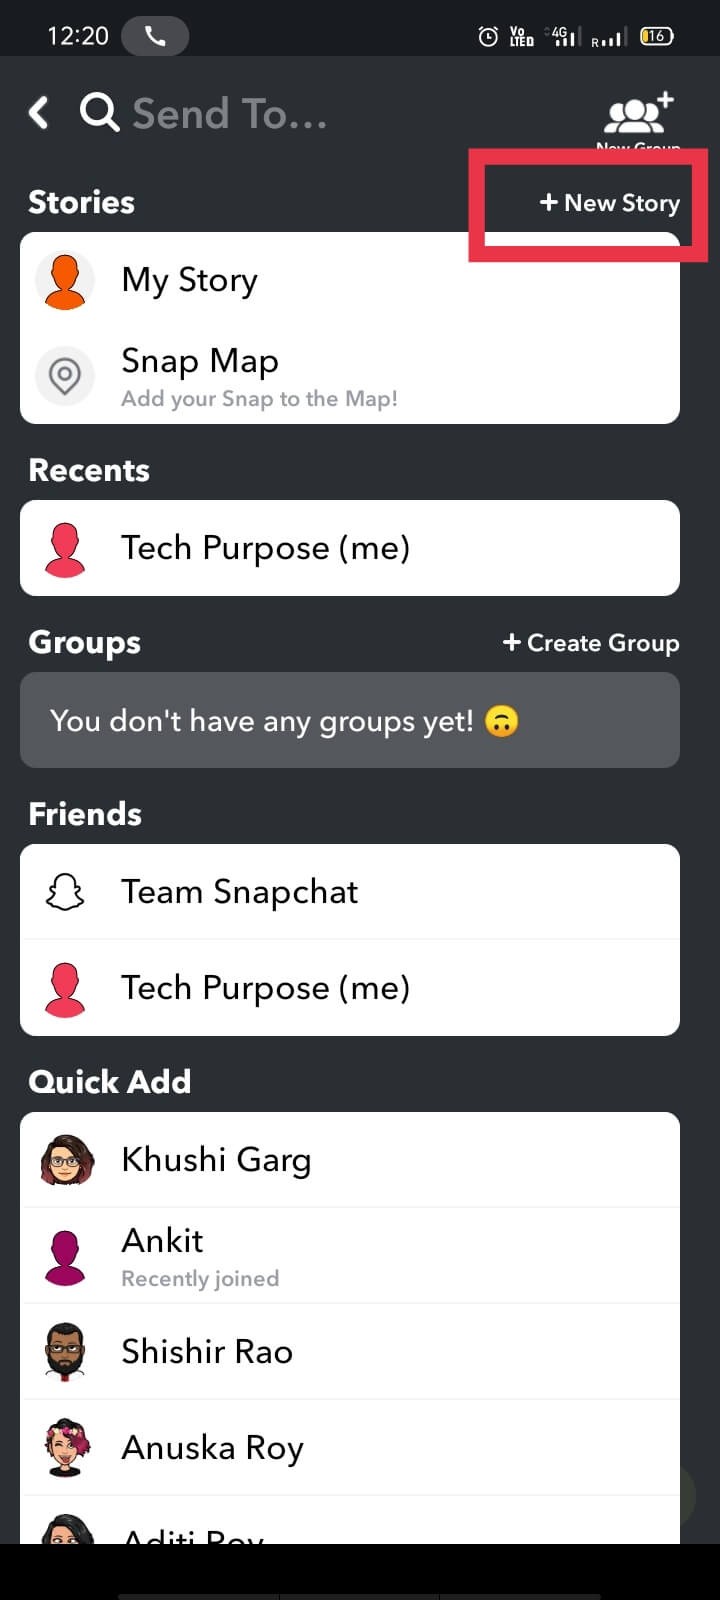 Cách tạo câu chuyện riêng tư trên Snapchat cho những người bạn thân